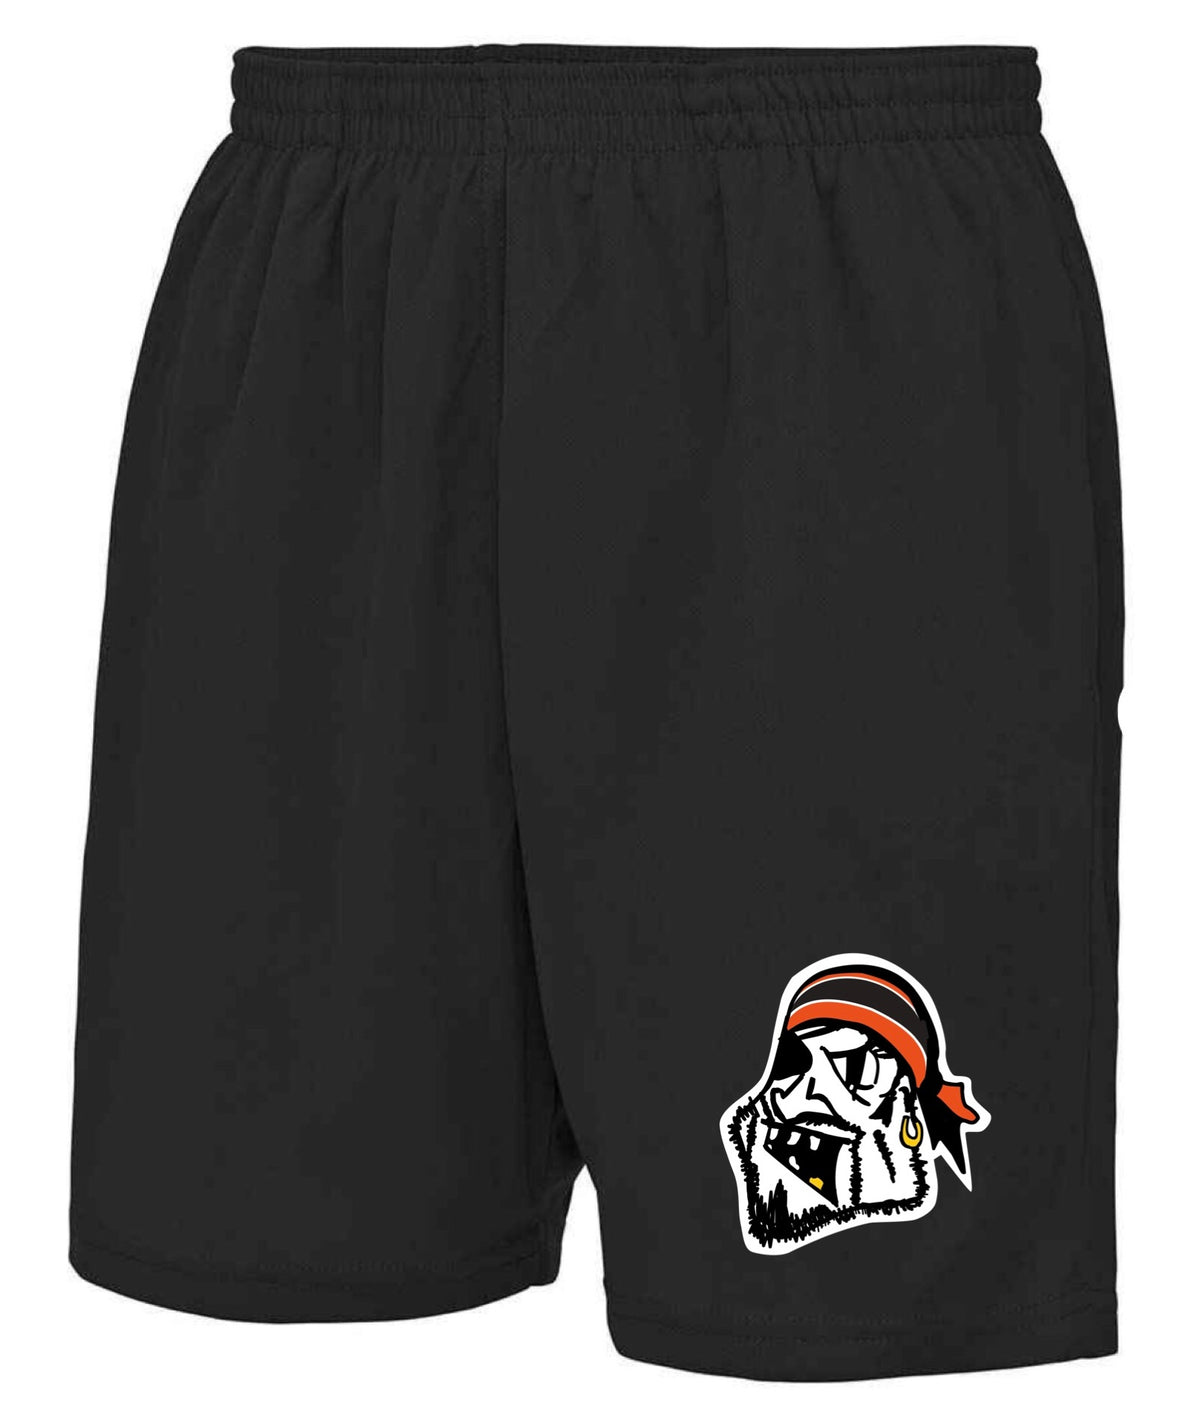 Buccaneers Shorts